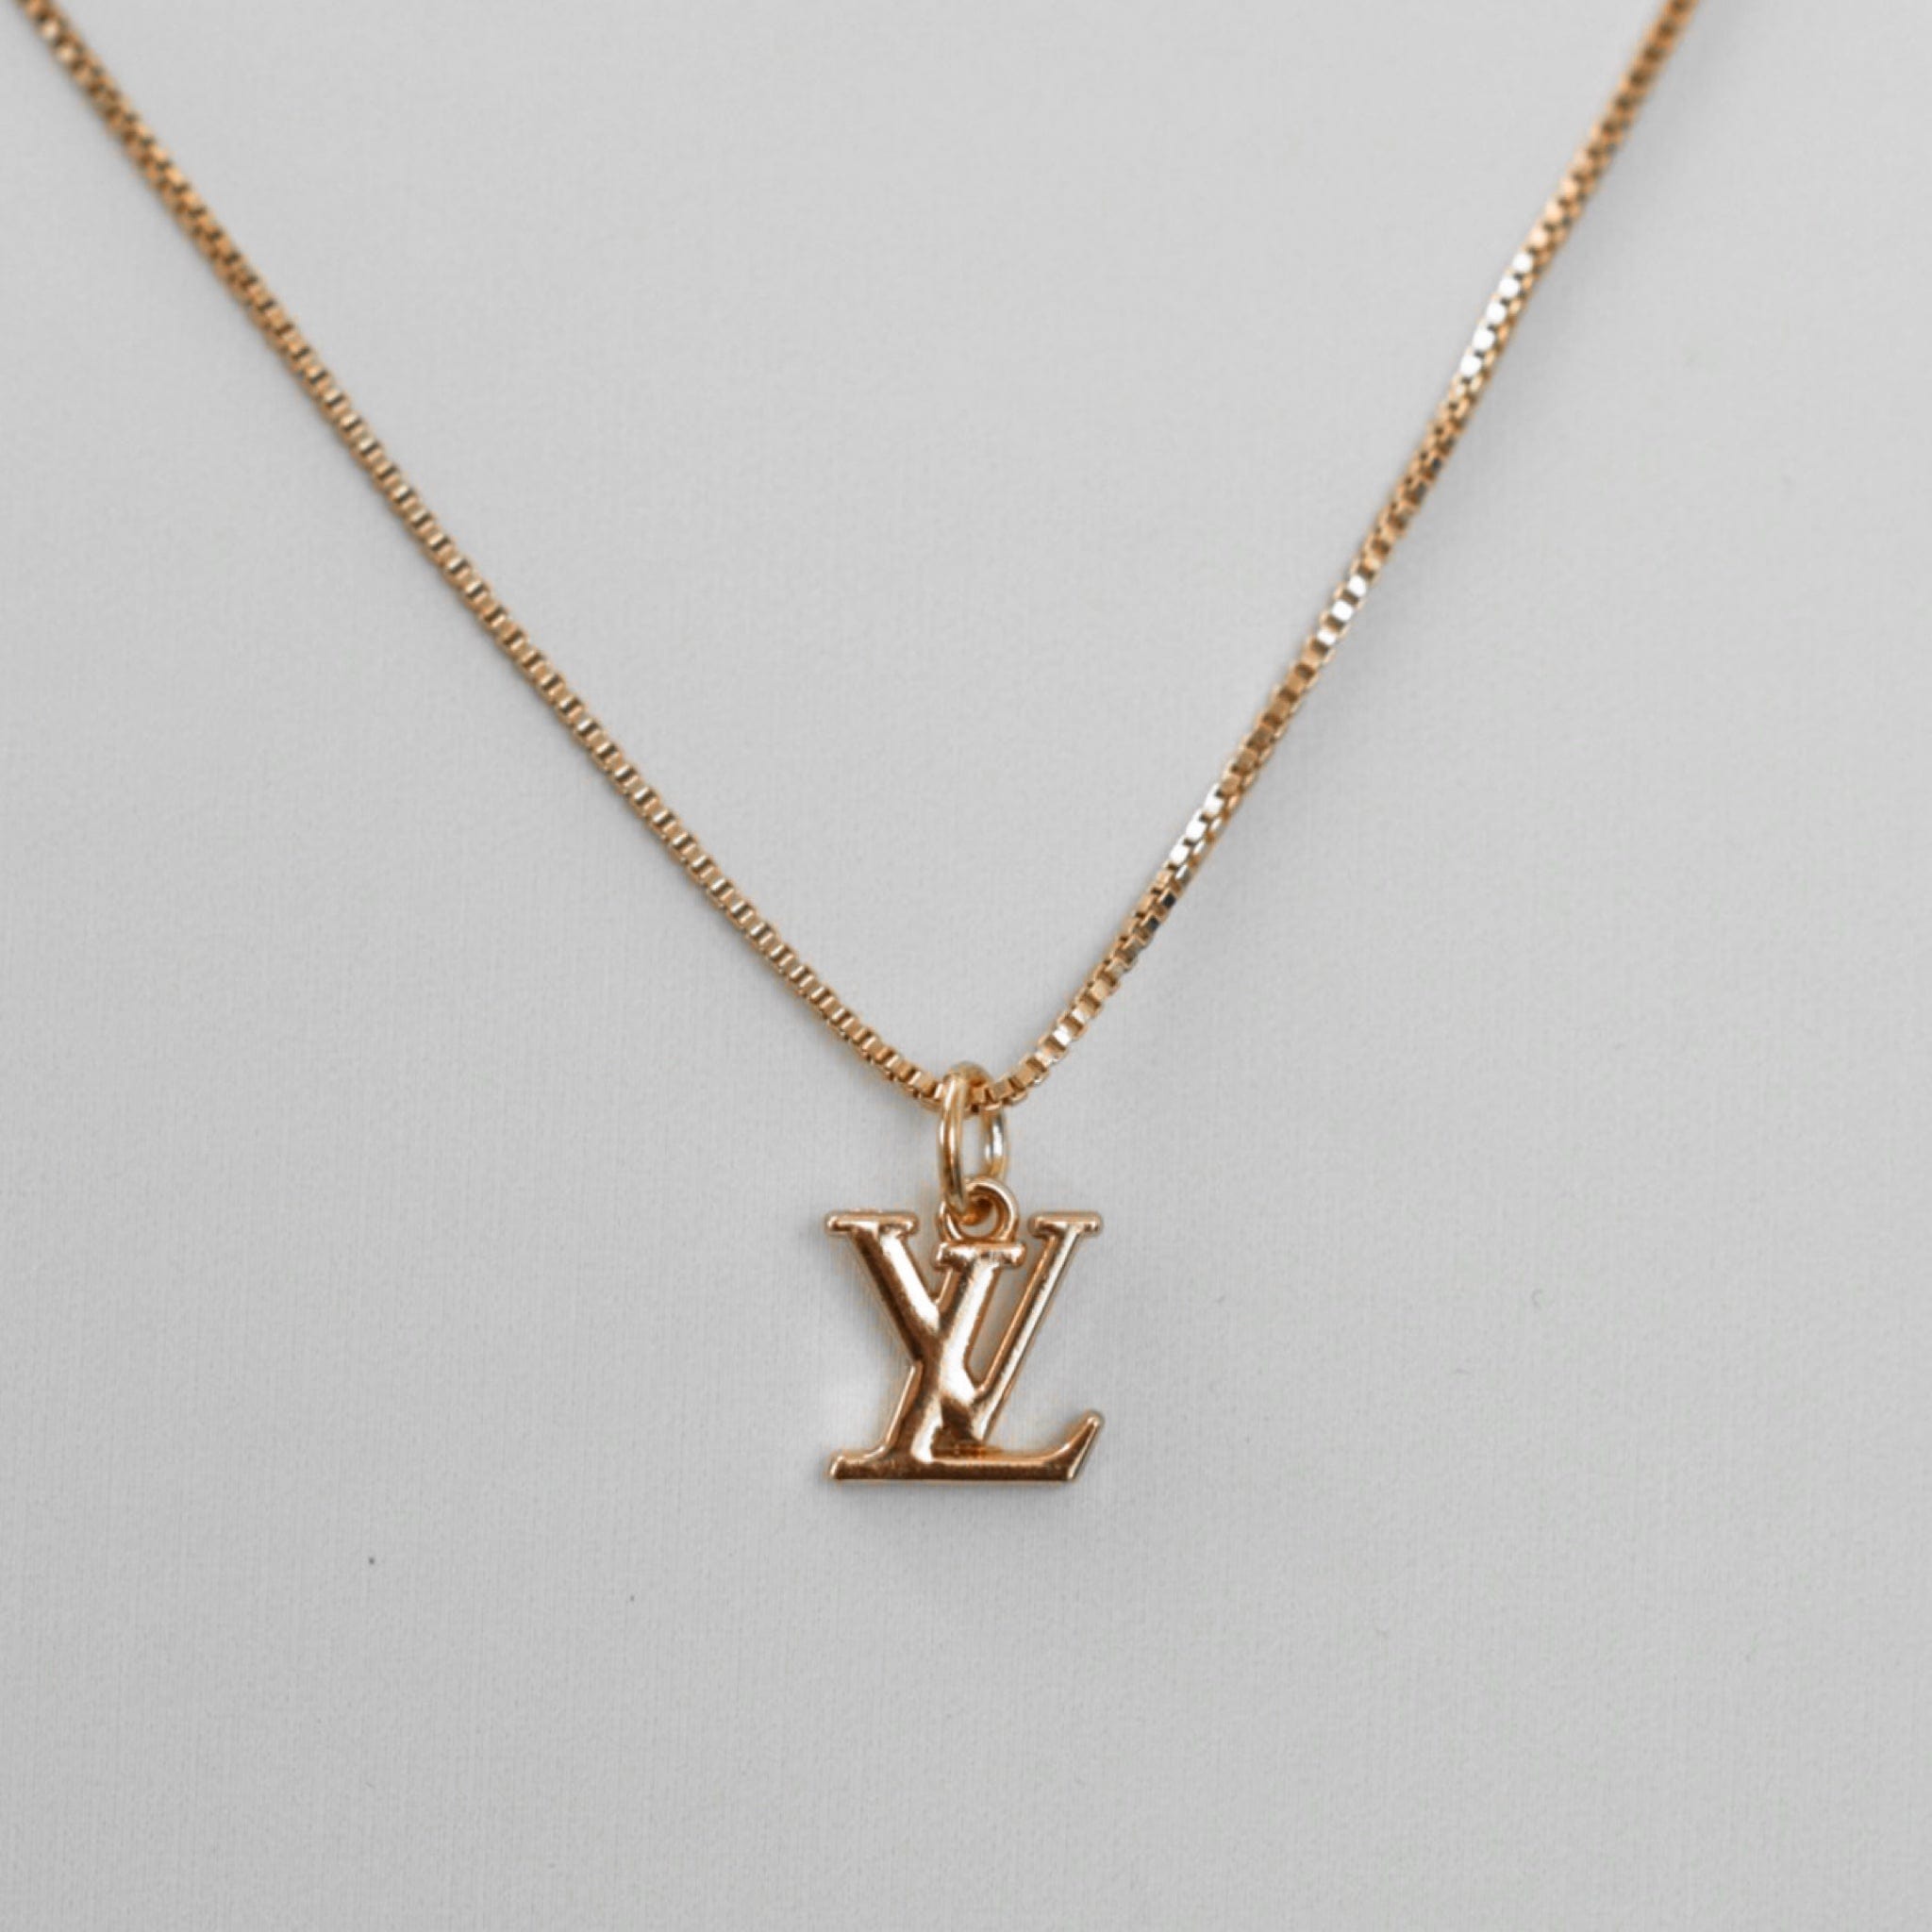 Gold Louis Vuitton necklace